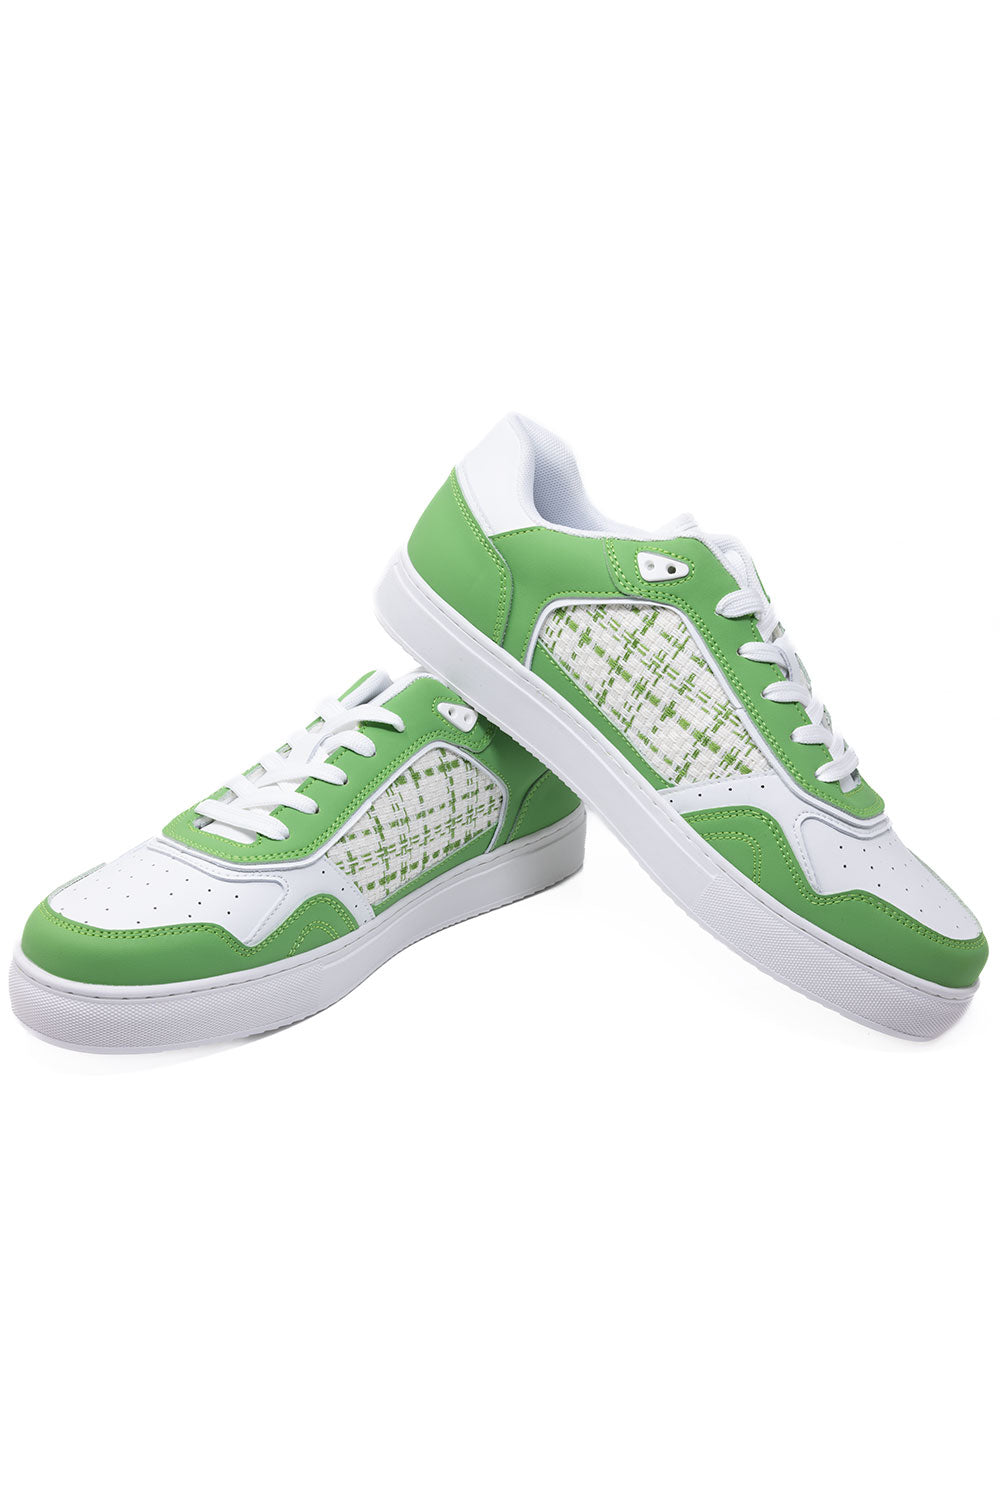 Barabas Men's Premium Walking Running Sneakers Low Cut 4SK02 Green